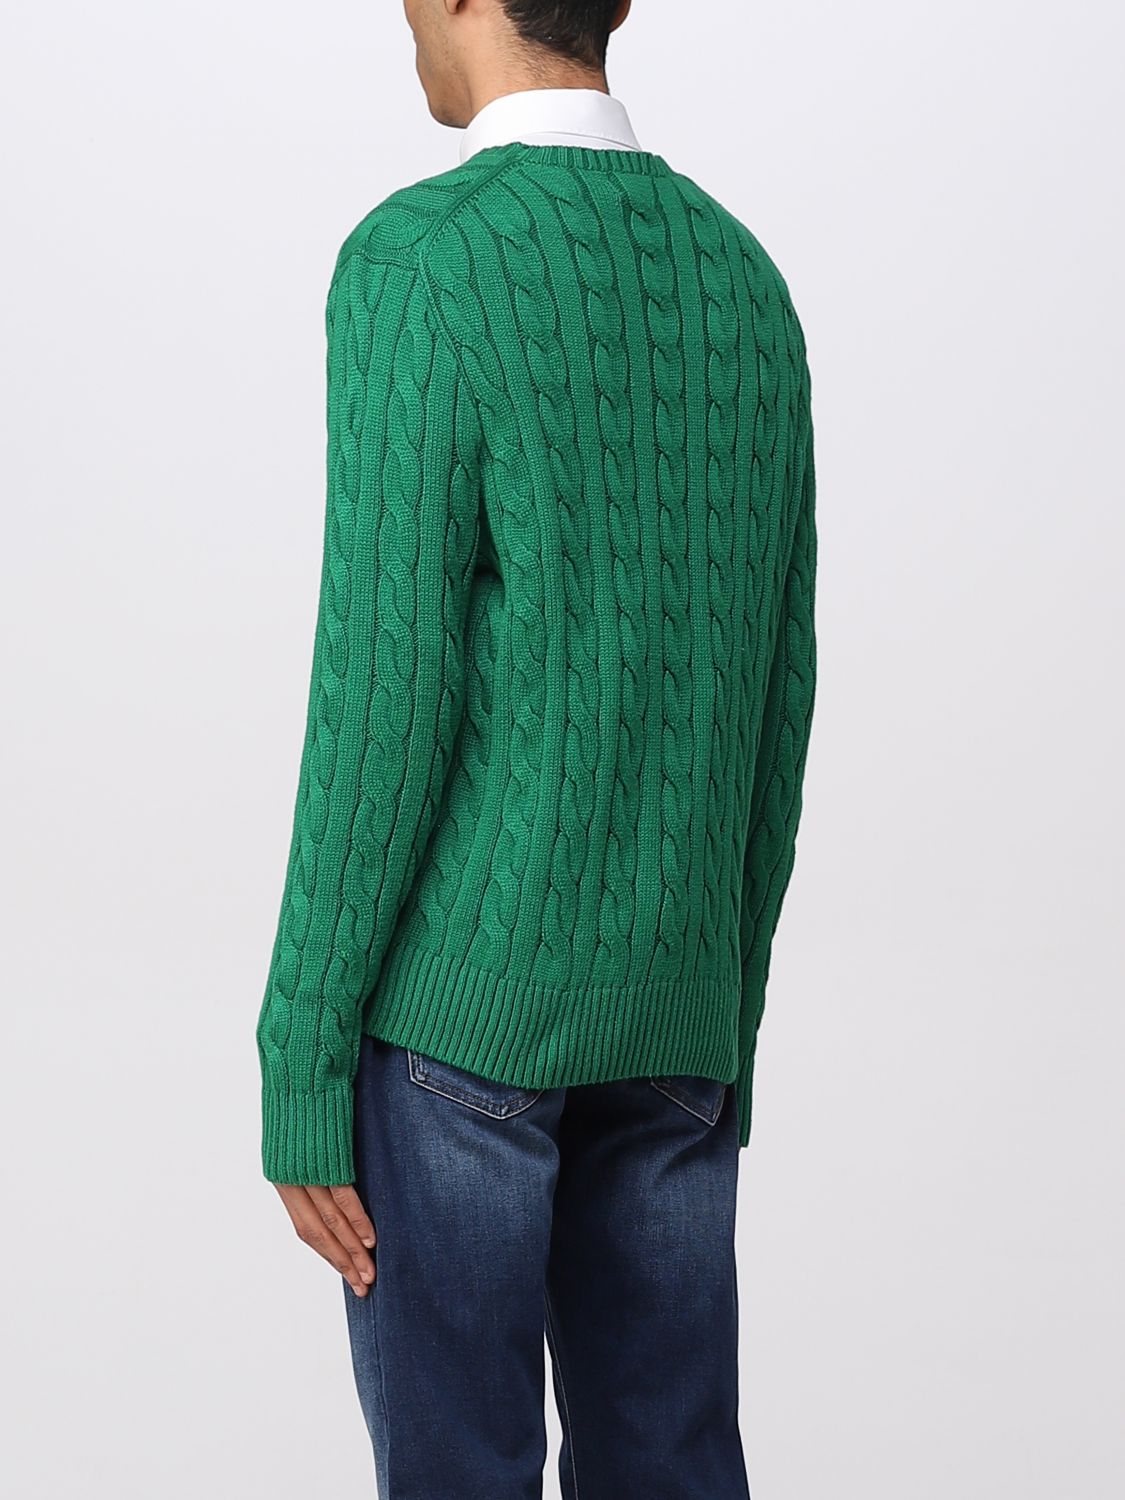 POLO RALPH LAUREN: sweater for man - Green | Polo Ralph Lauren sweater ...